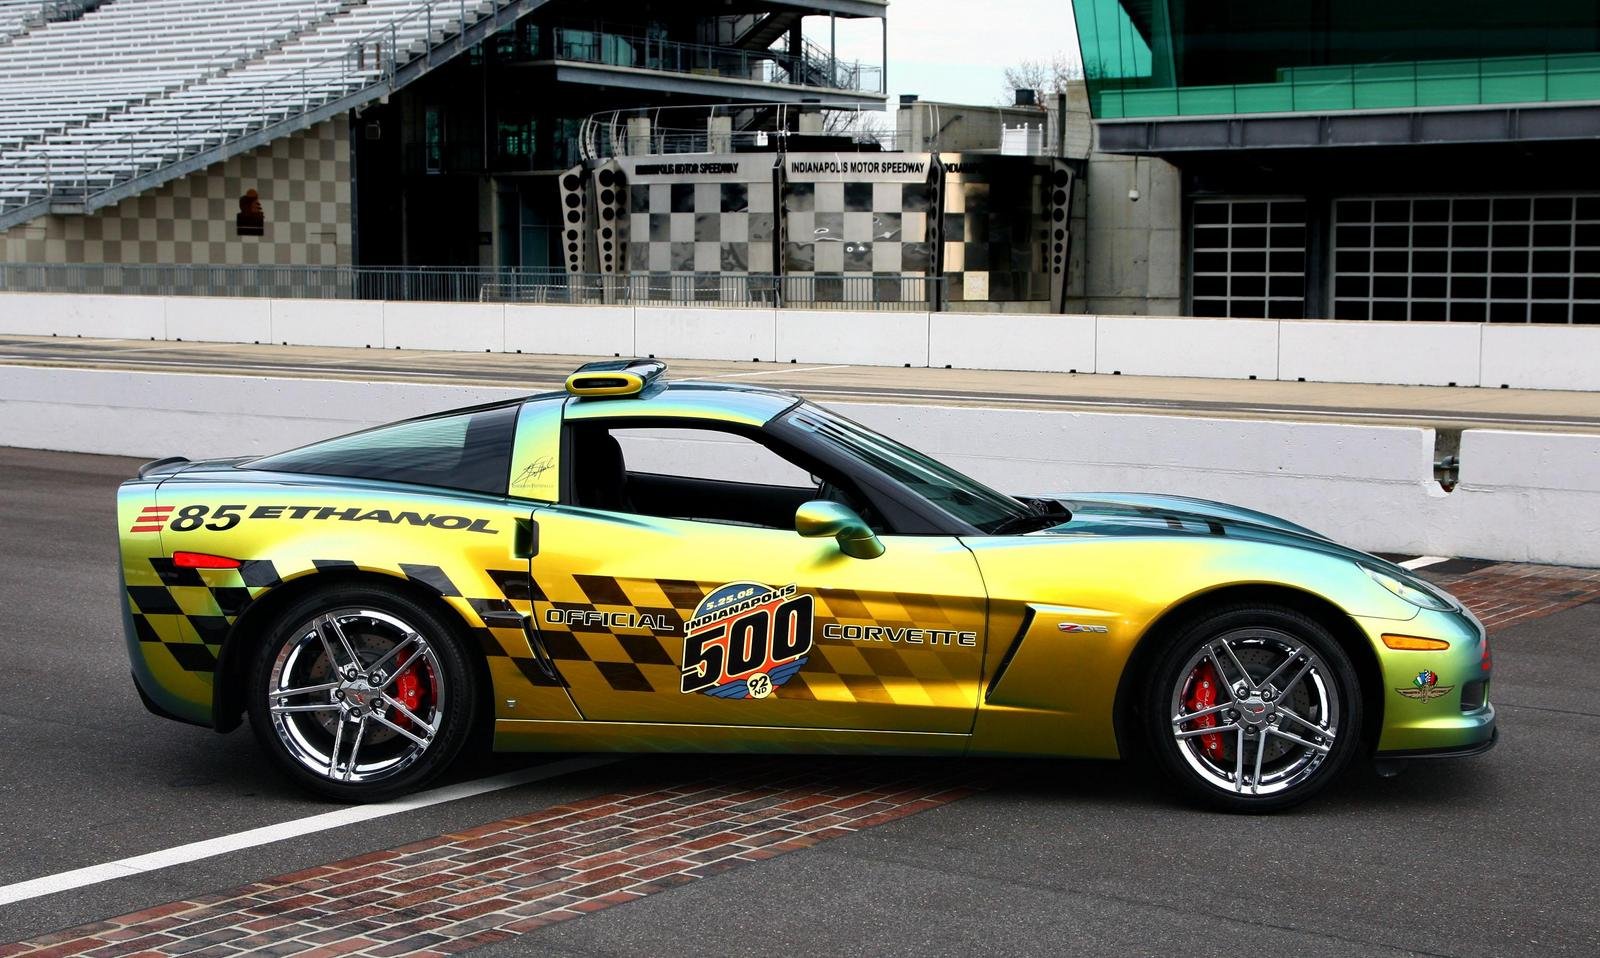 2008 Chevrolet Corvette Convertible Indianapolis 500 Pace Car